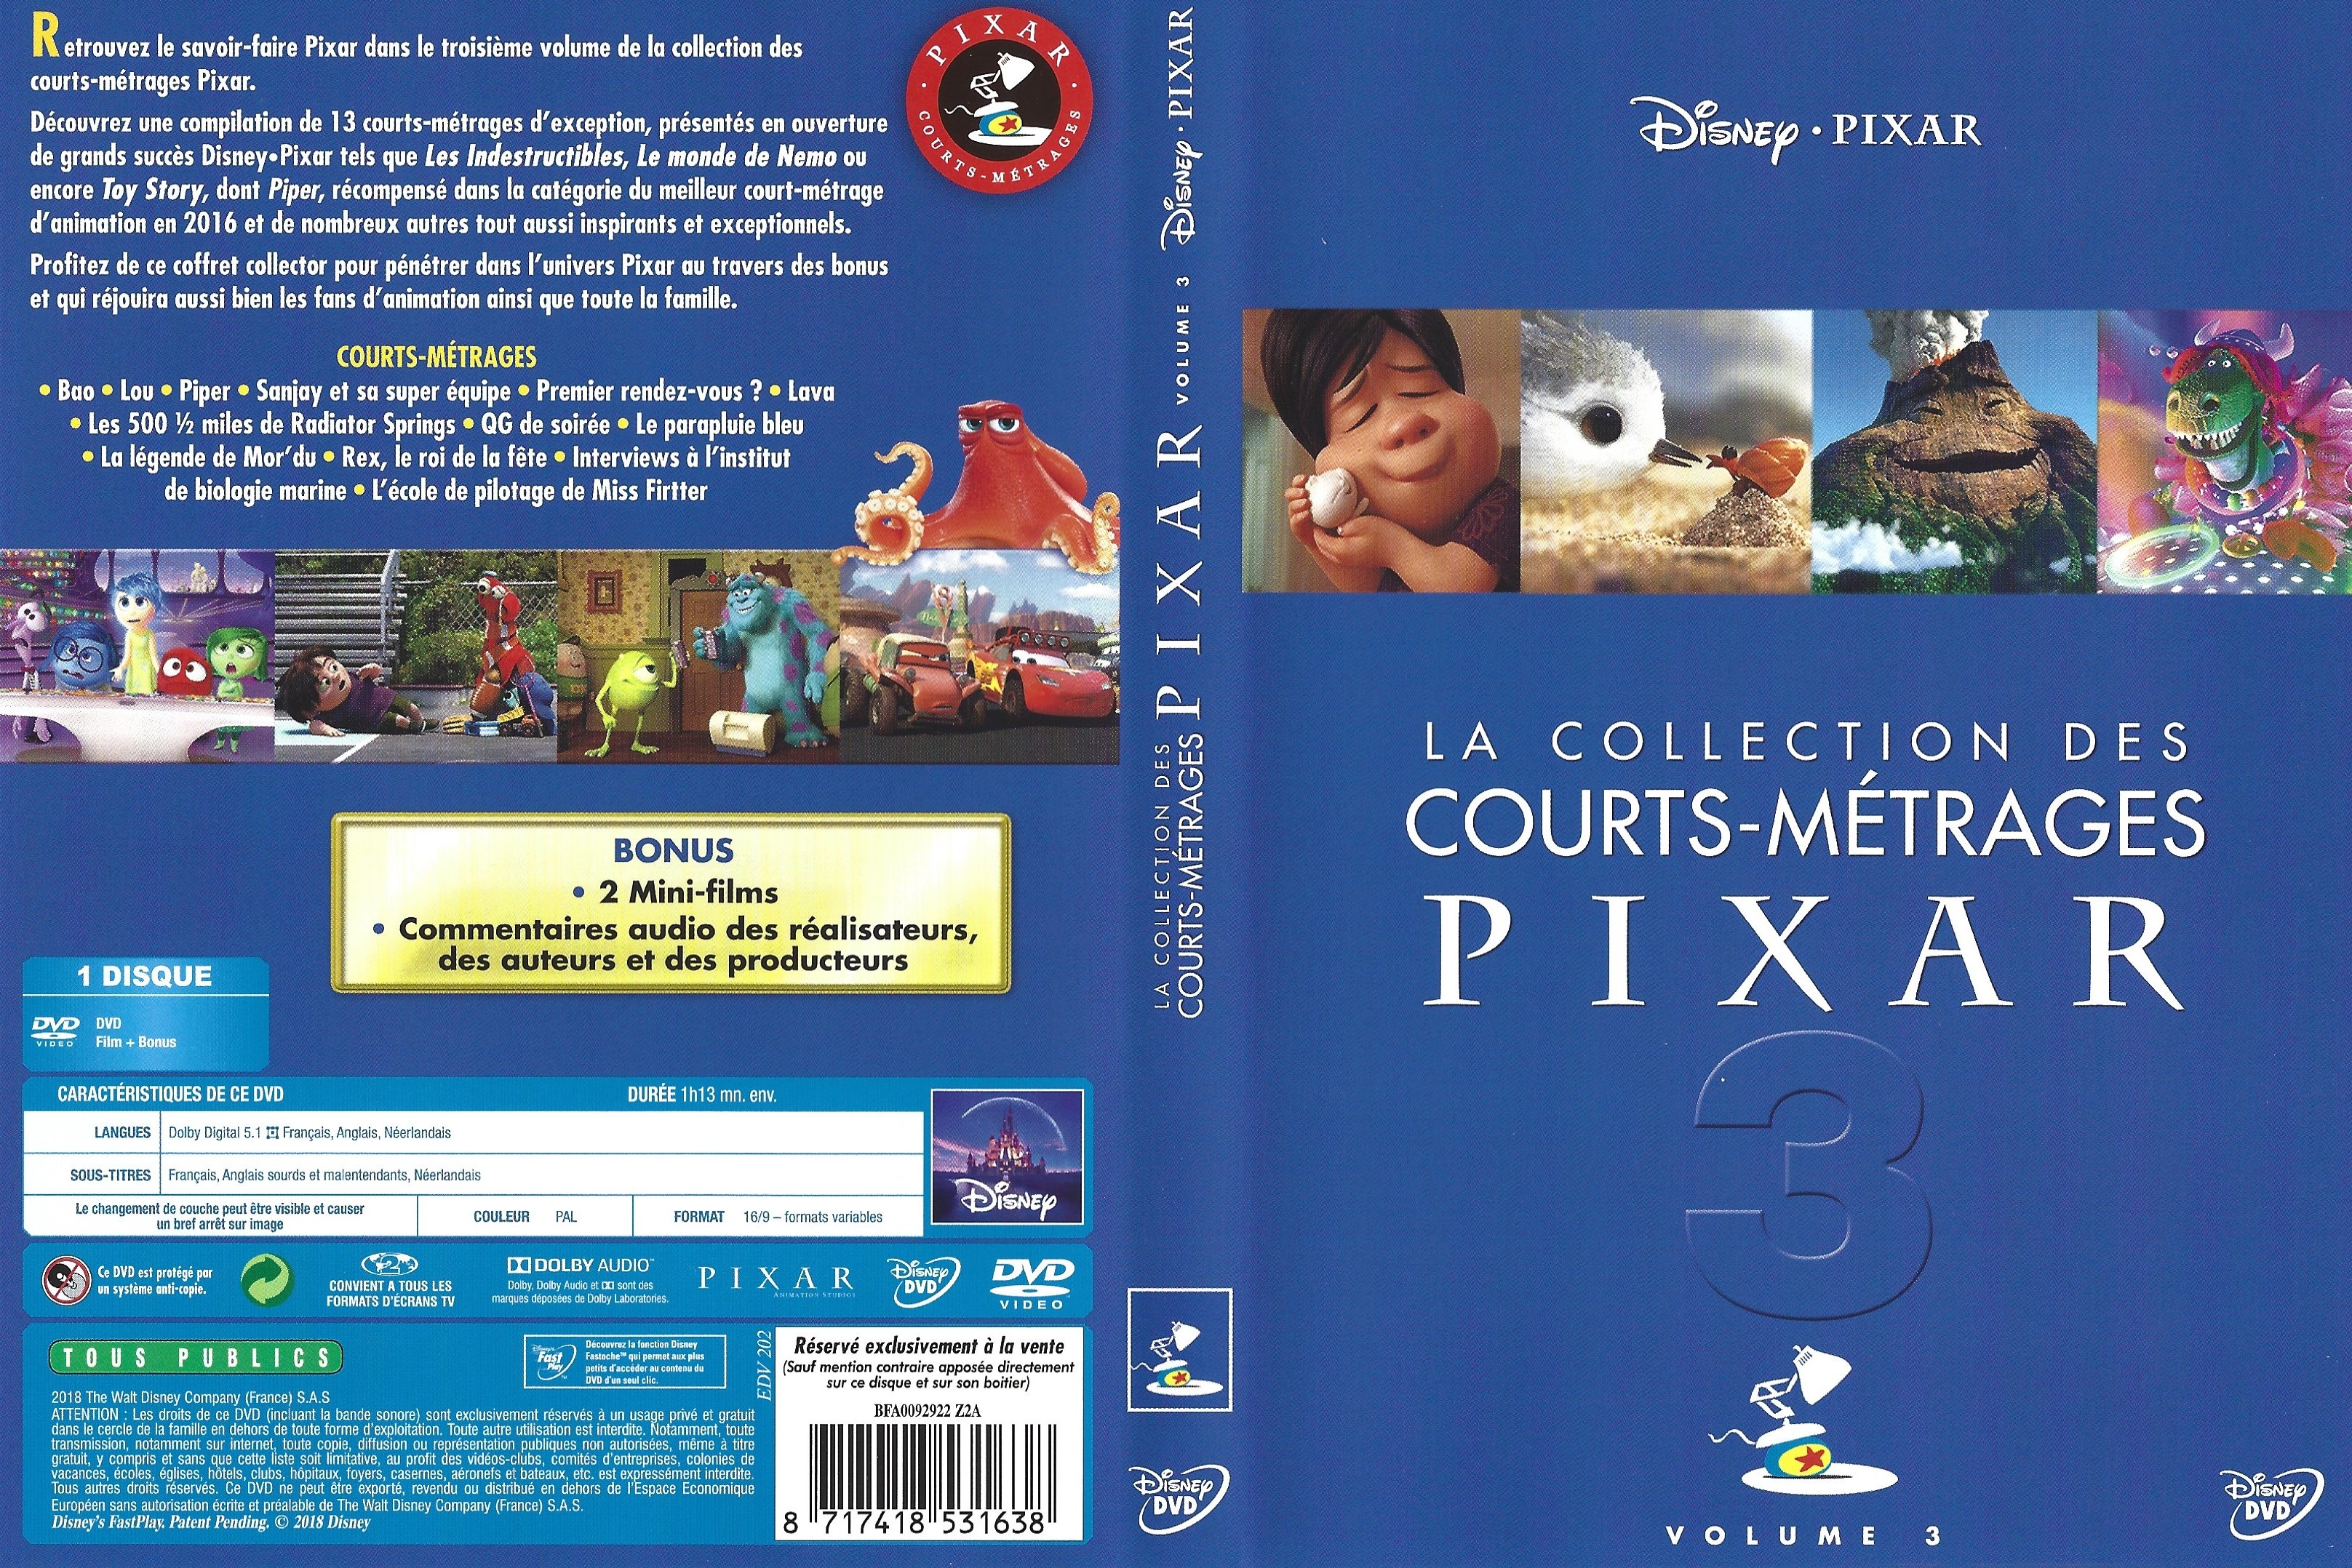 Jaquette DVD La Collection Des Courts-Metrages Pixar 3